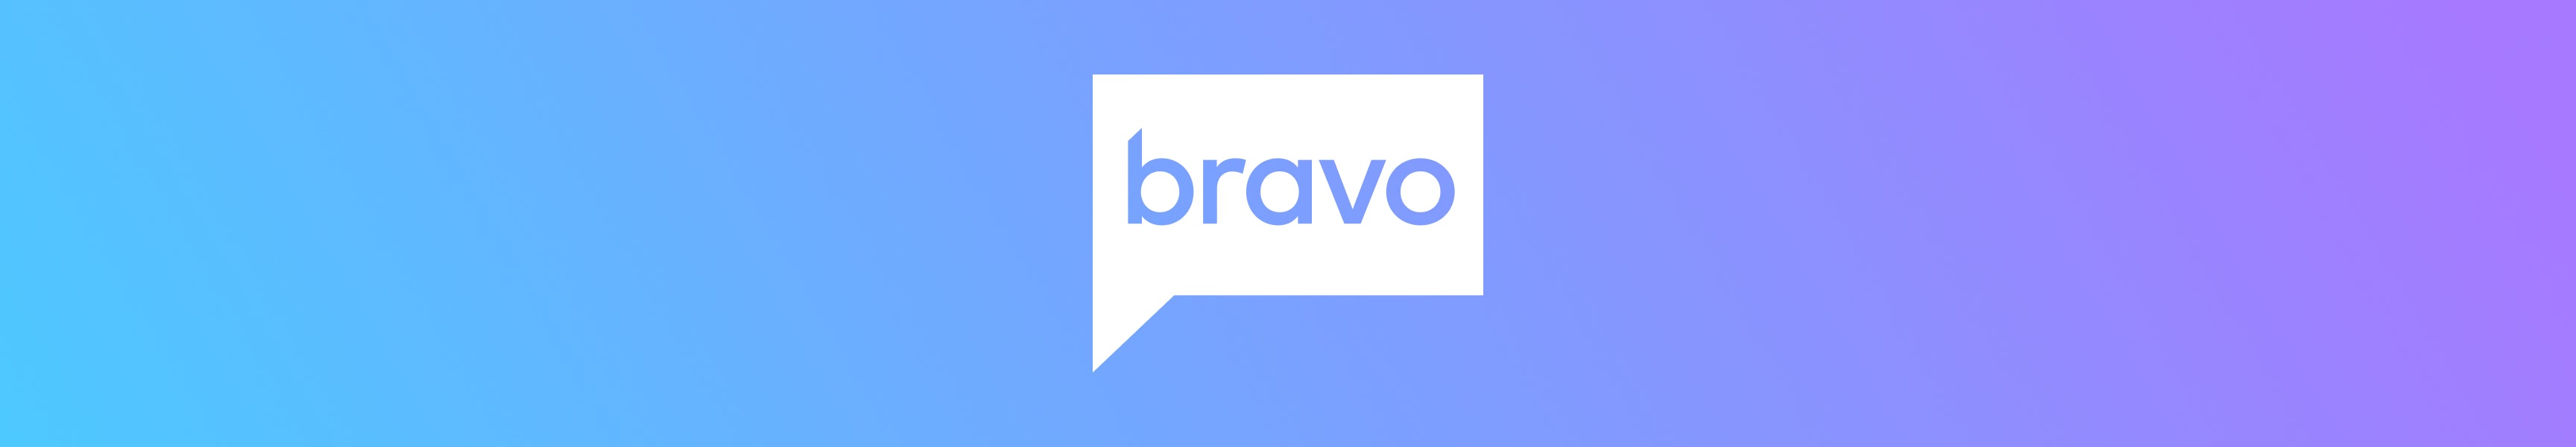 Bravo Home & Accessories